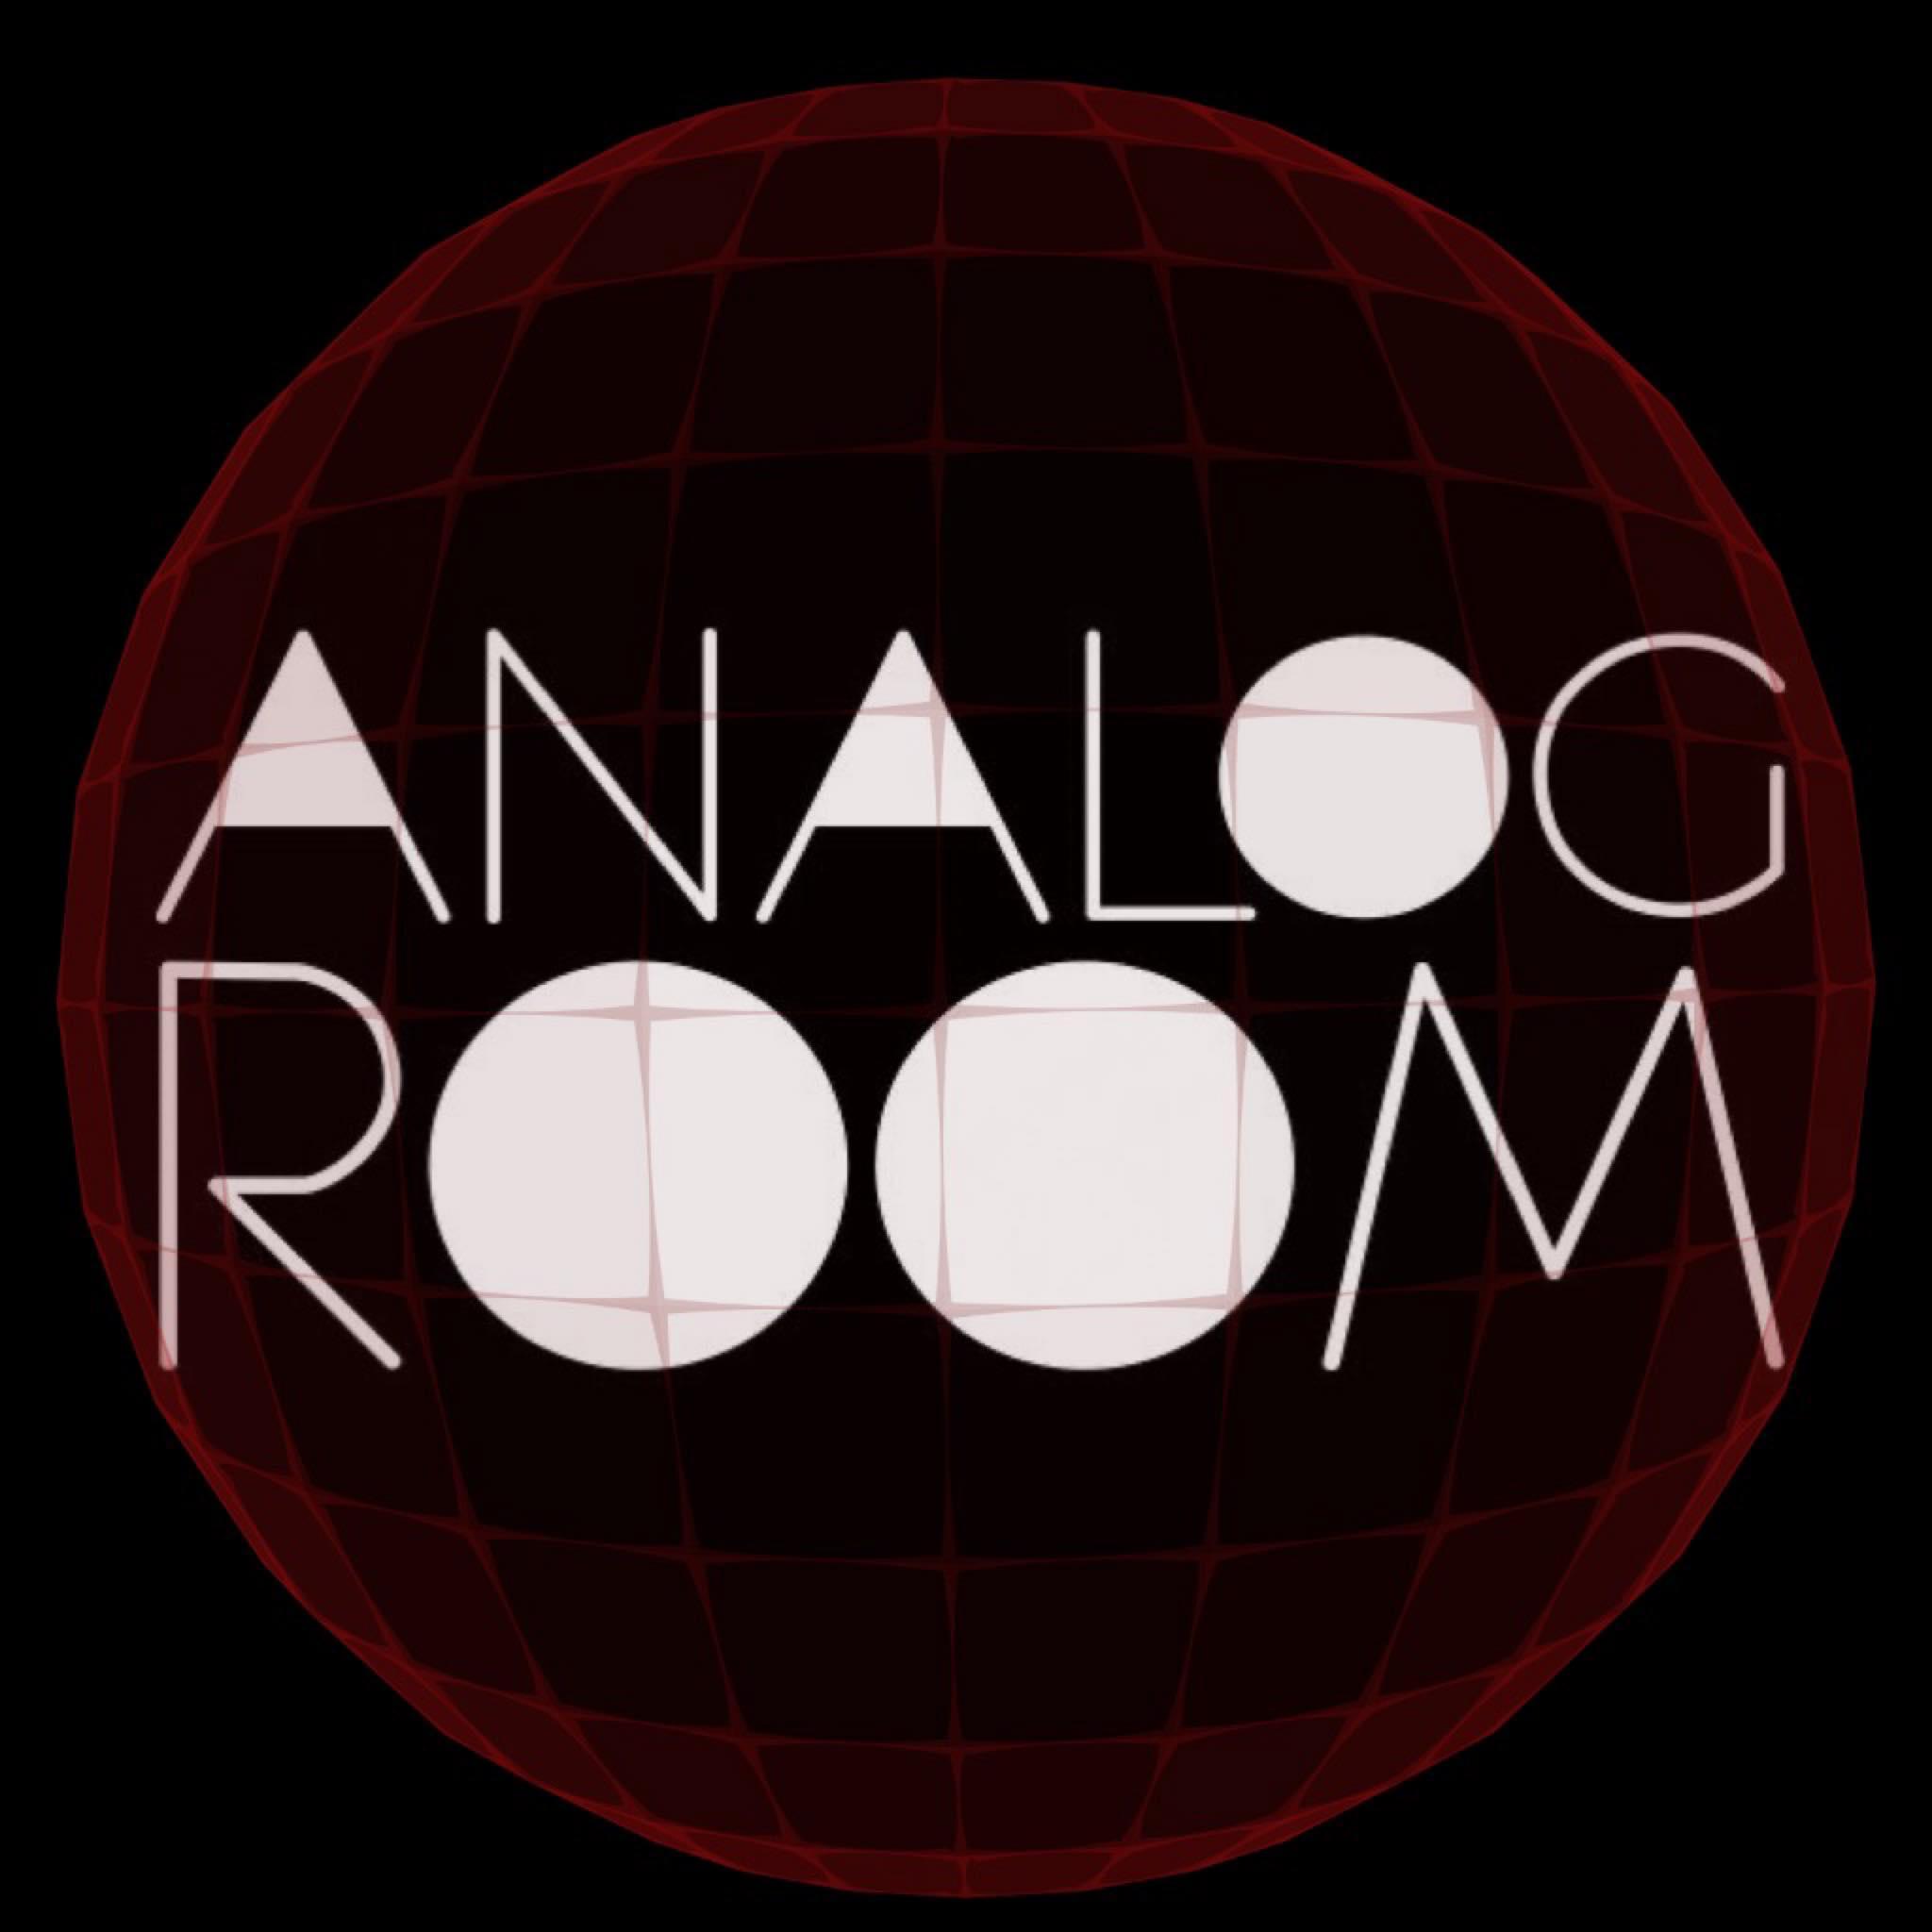 Analog Room pres. Anastasia Kristensen